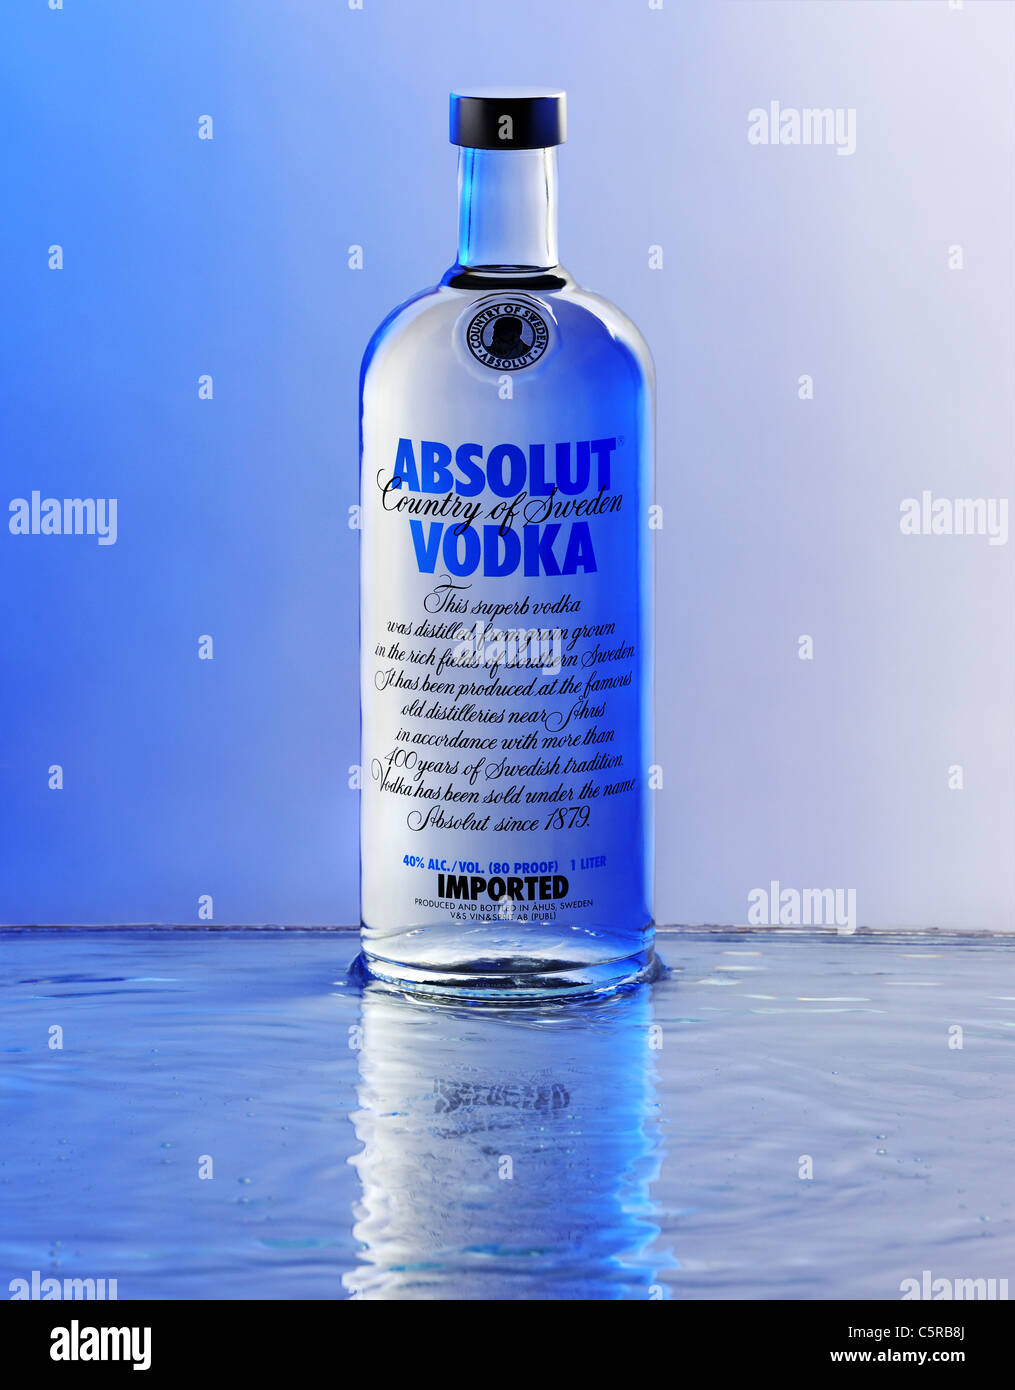 absolut vodka bottle Stock Photo